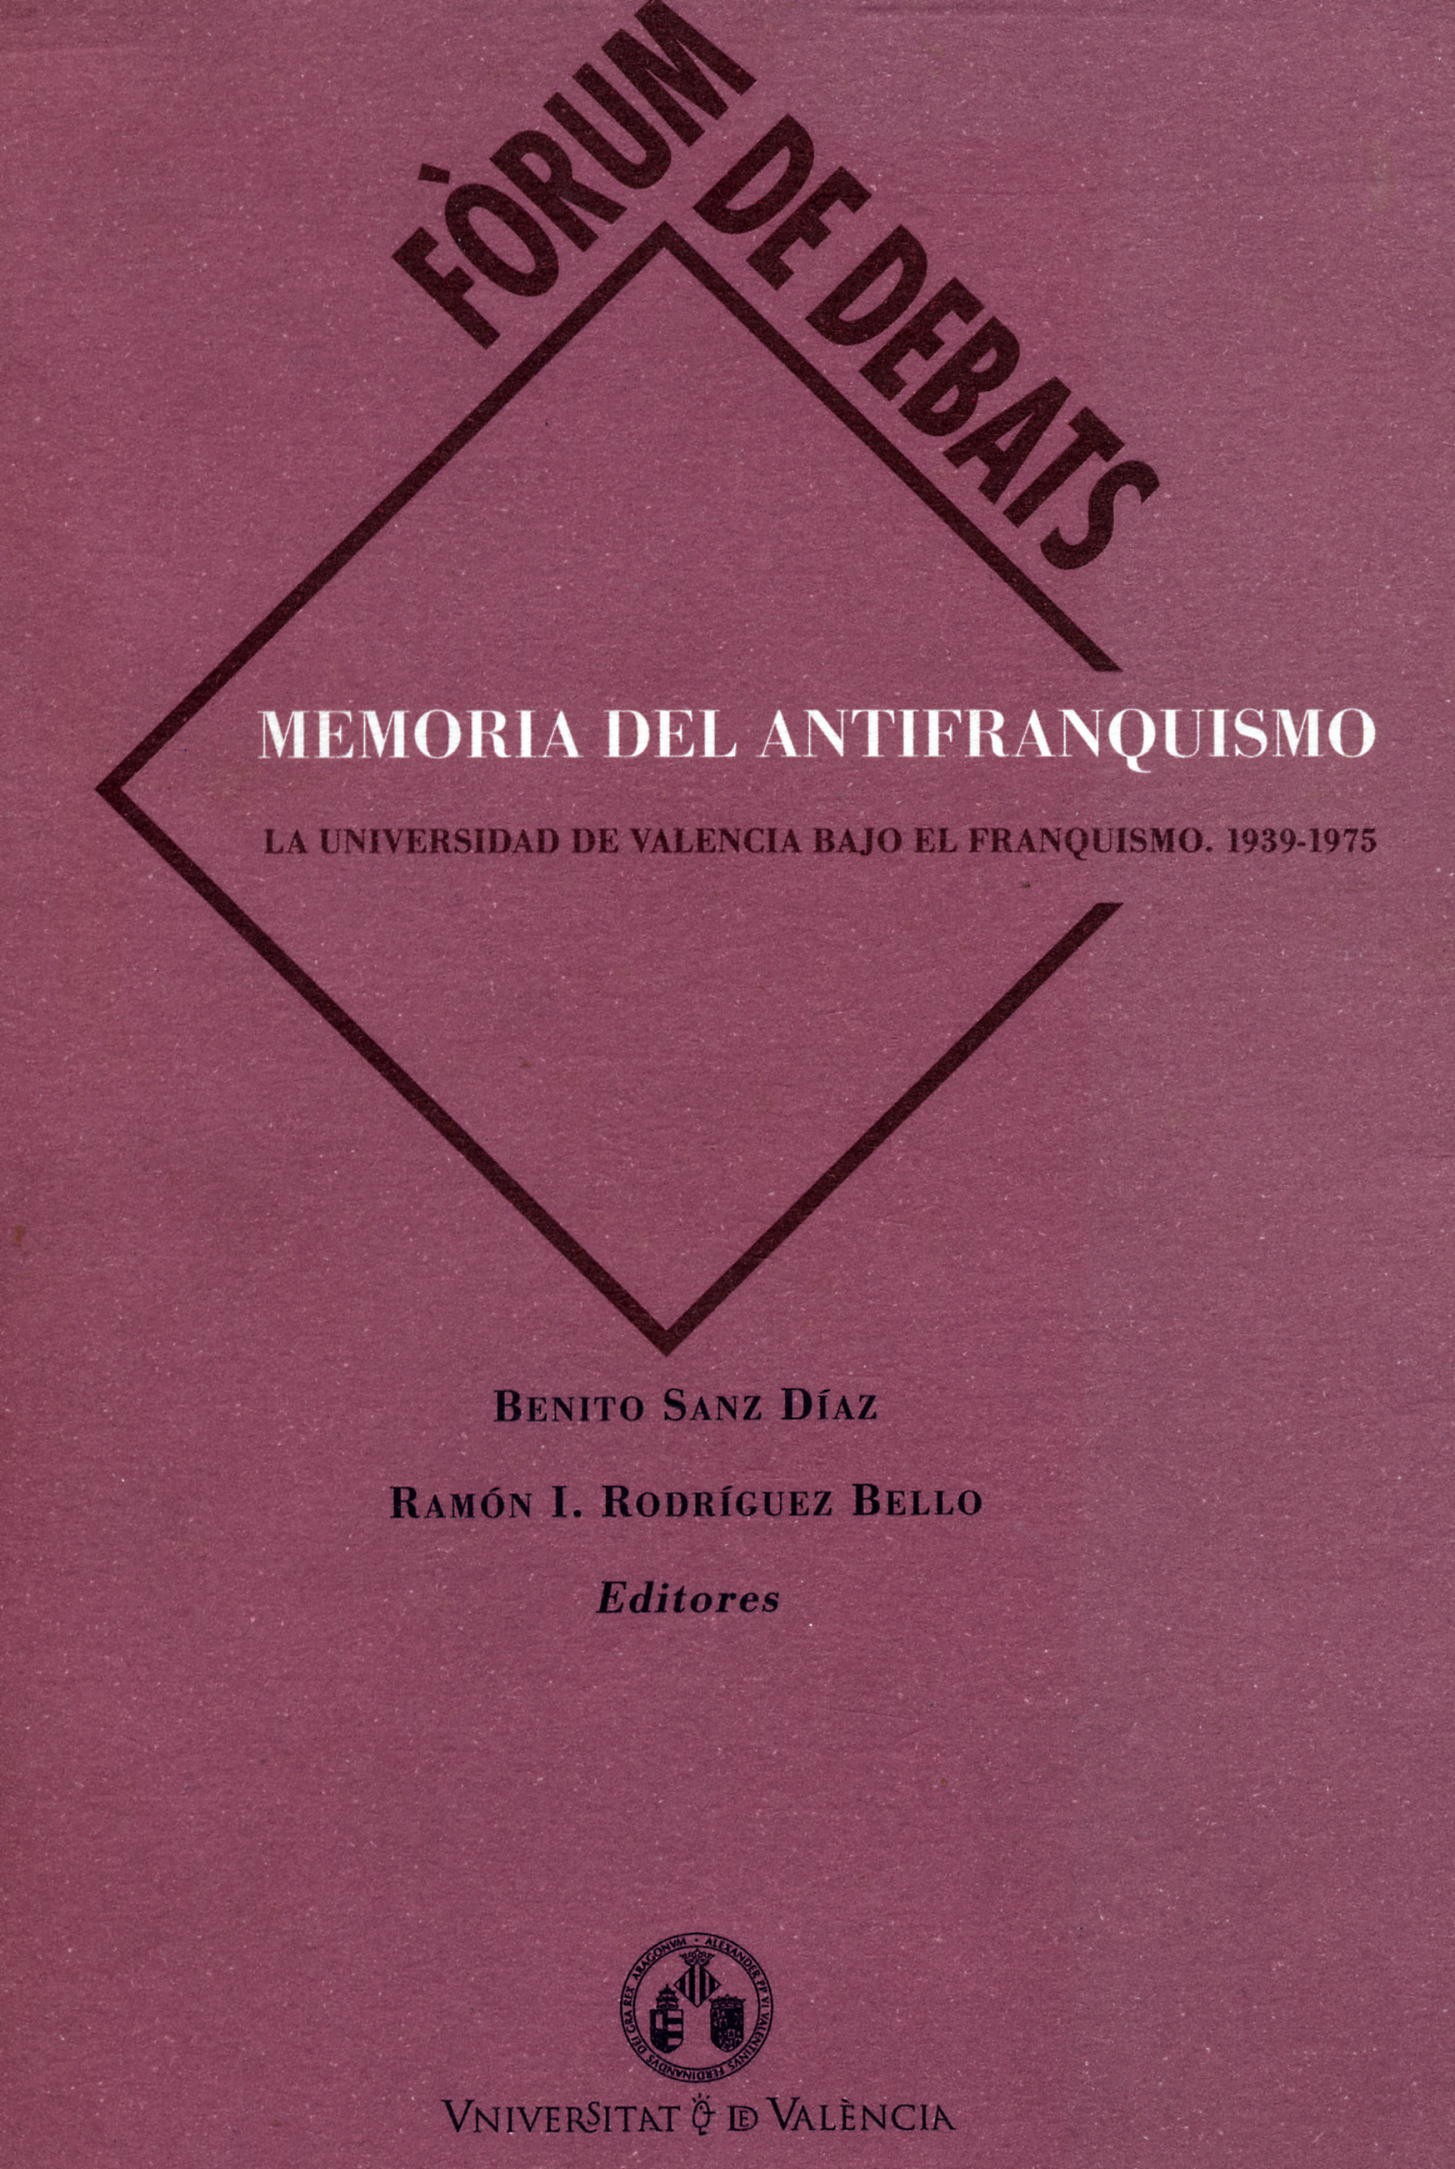 Imagen de portada del libro Memoria del antifranquismo